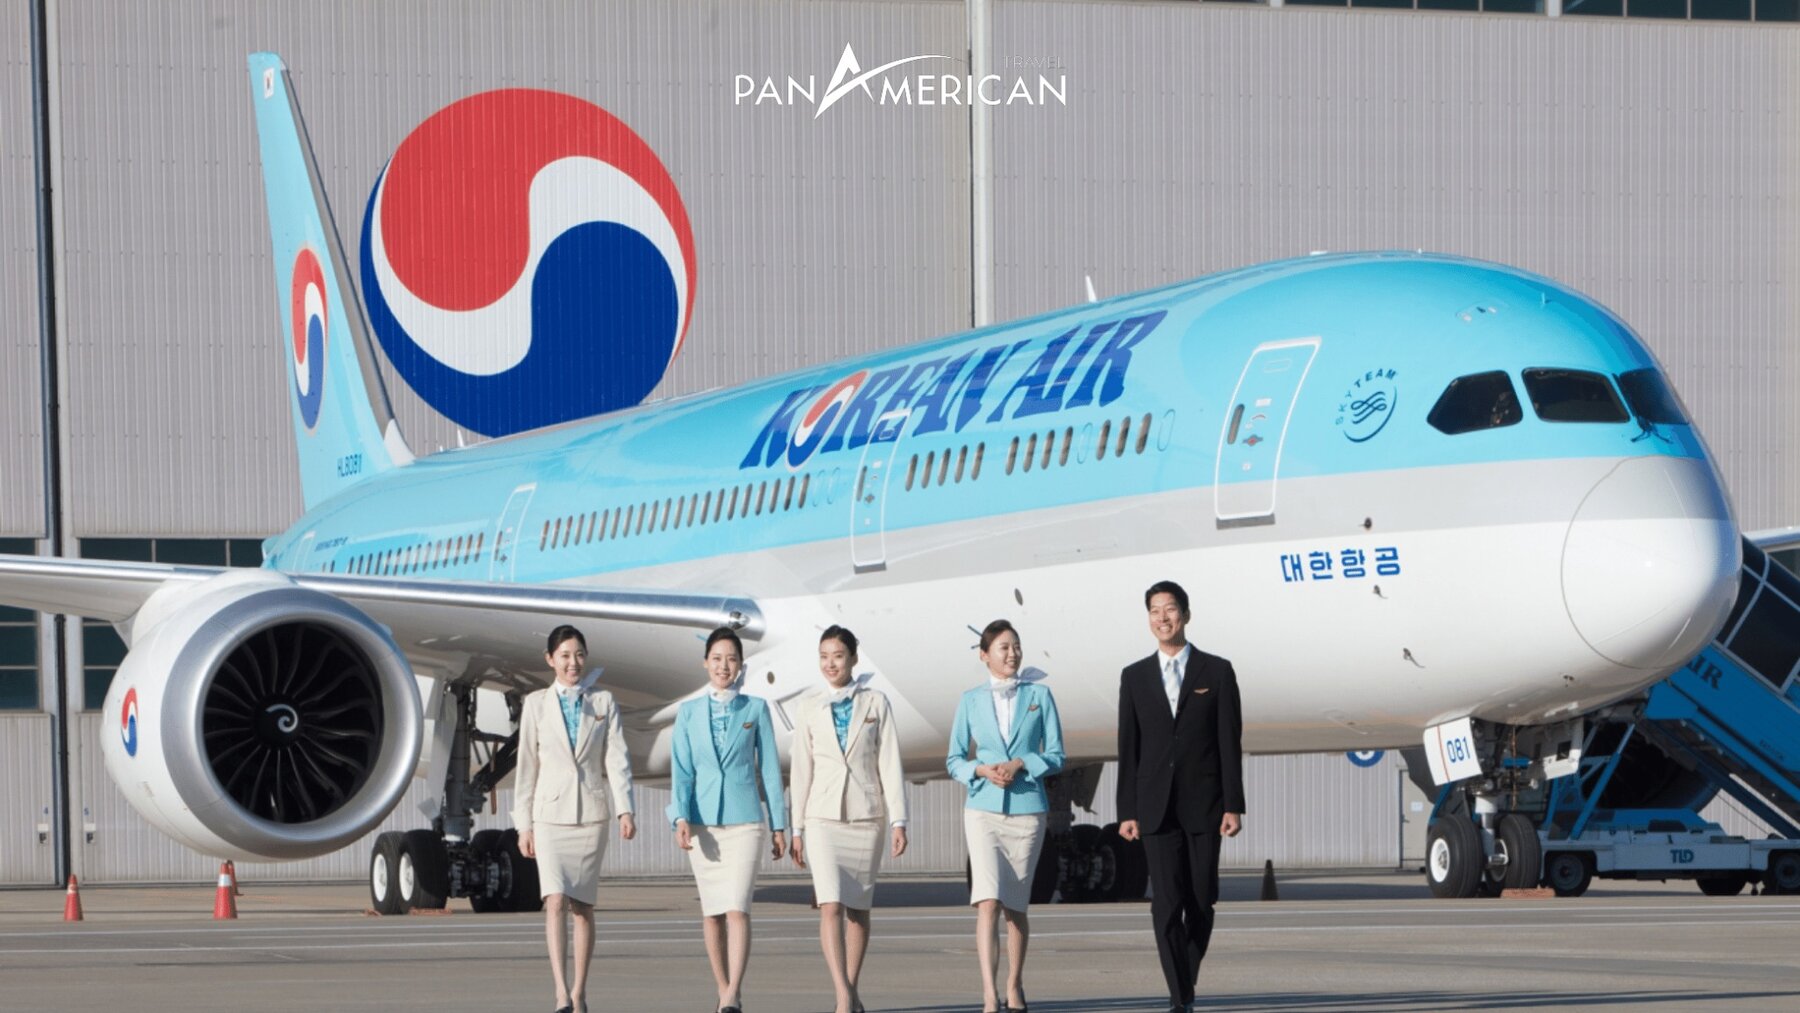 Korean Air - Hãng hàng không nổi tiếng đến từ Hàn Quốc